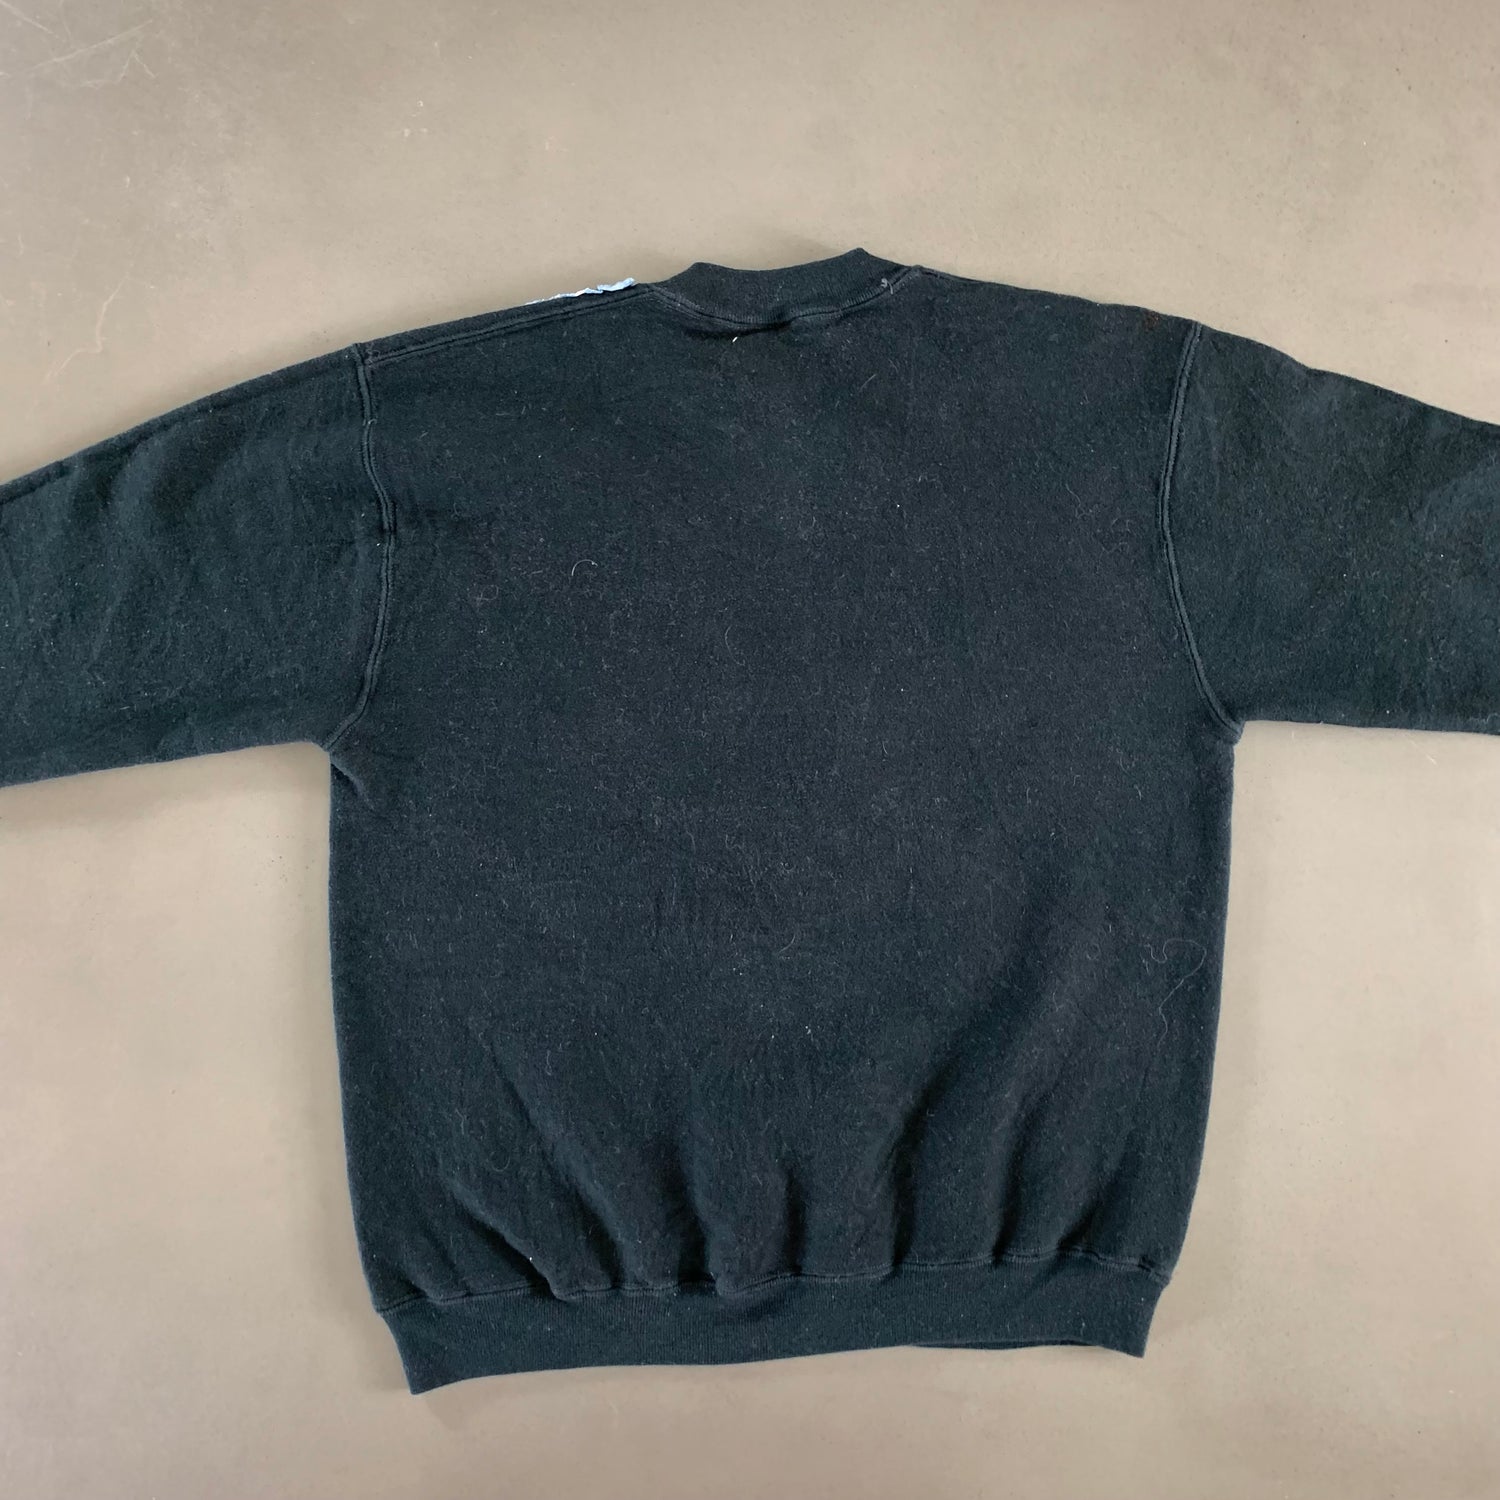 Vintage 1990s Mushroom Sweatshirt size Large